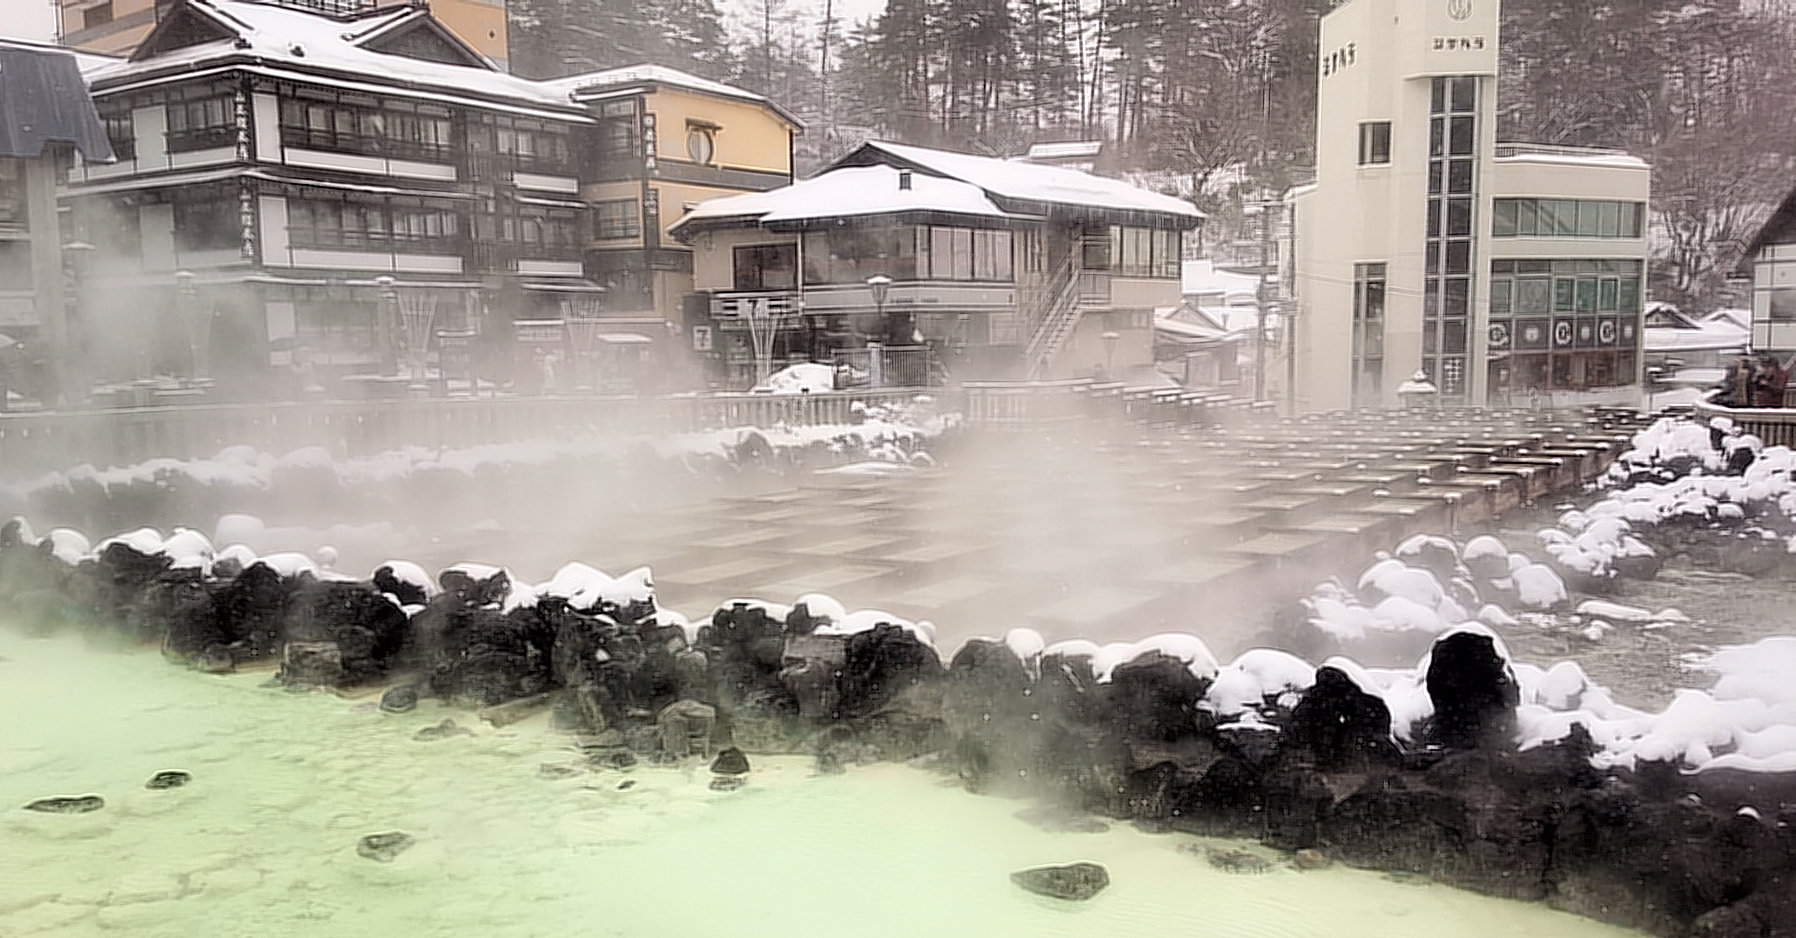 1月に草津温泉へ車で行きたいけど雪はどう 服装のおすすめは お役立ち情報館